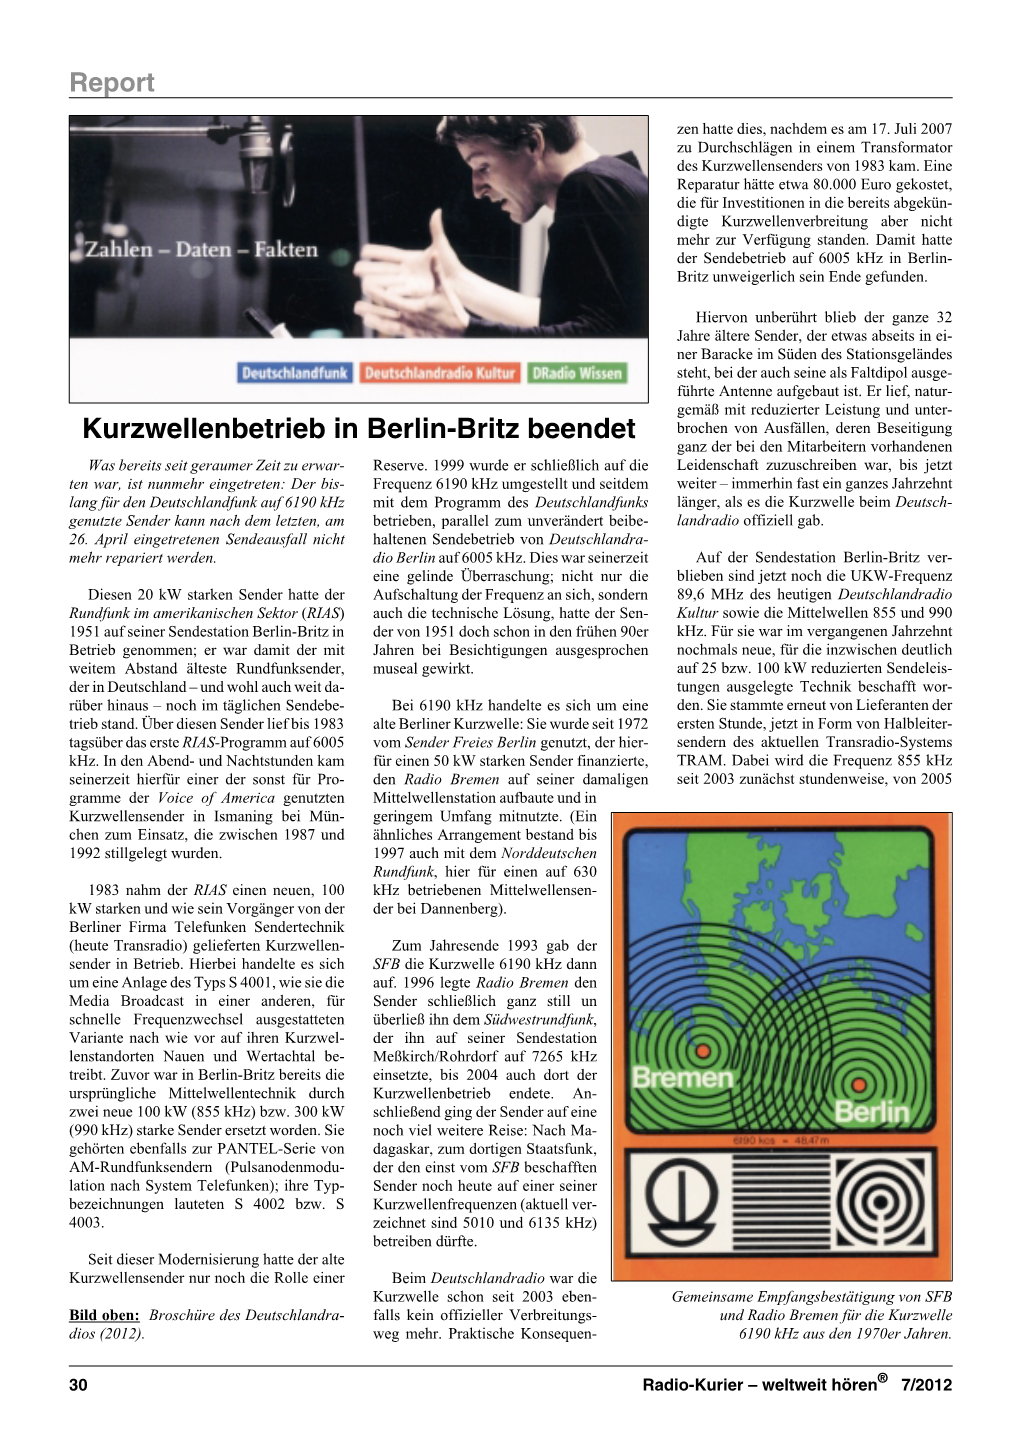 Kurzwellenbetrieb in Berlin-Britz Beendet